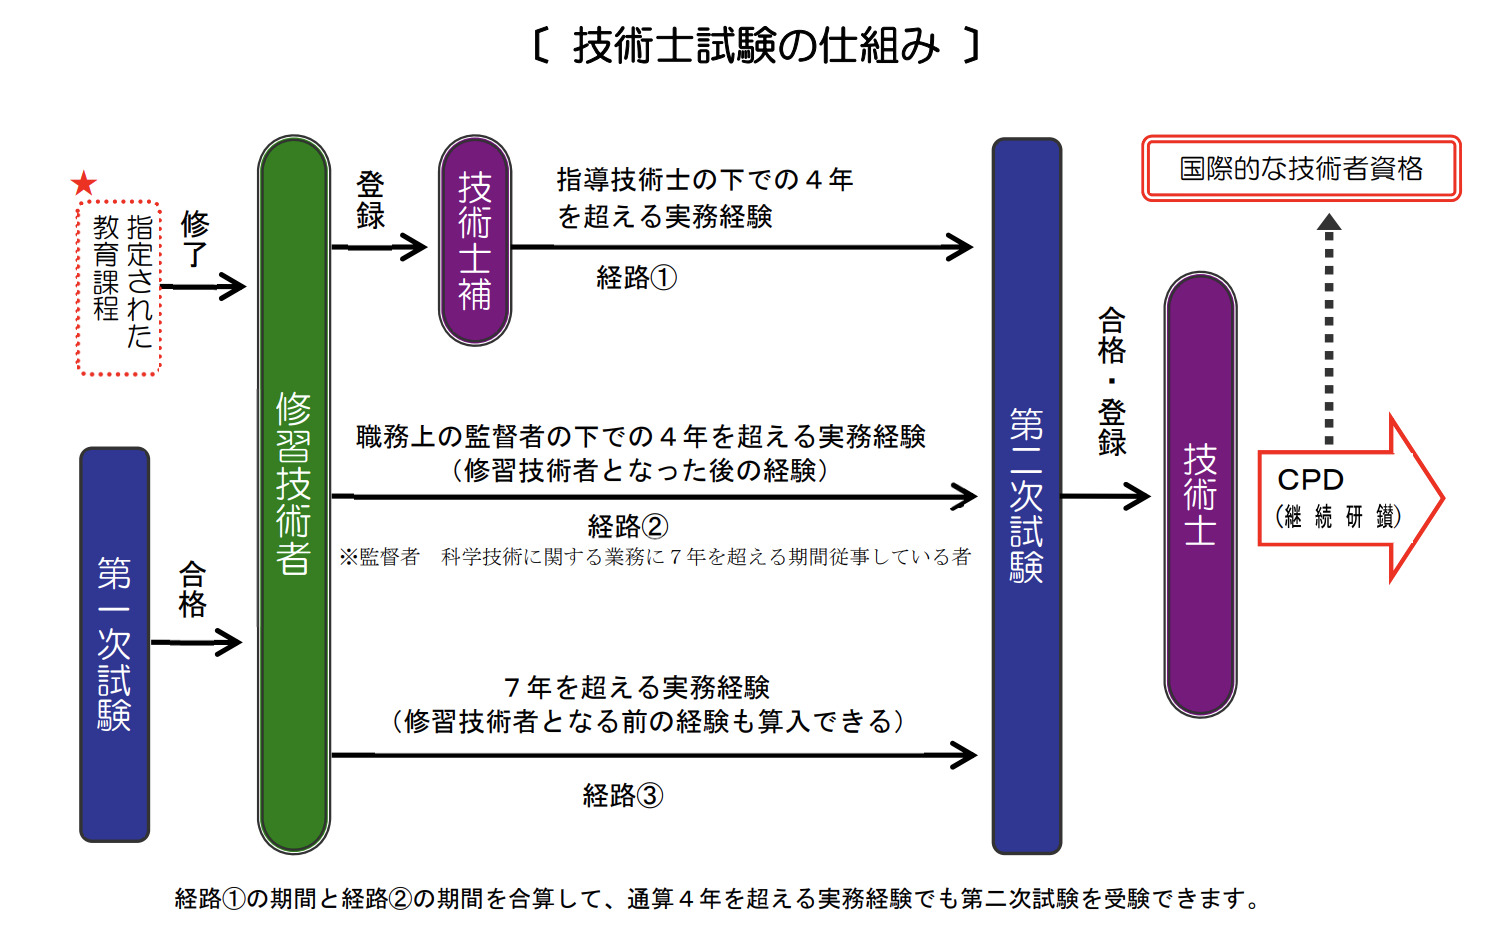 公益社団法人日本技術士会「技術士制度について」